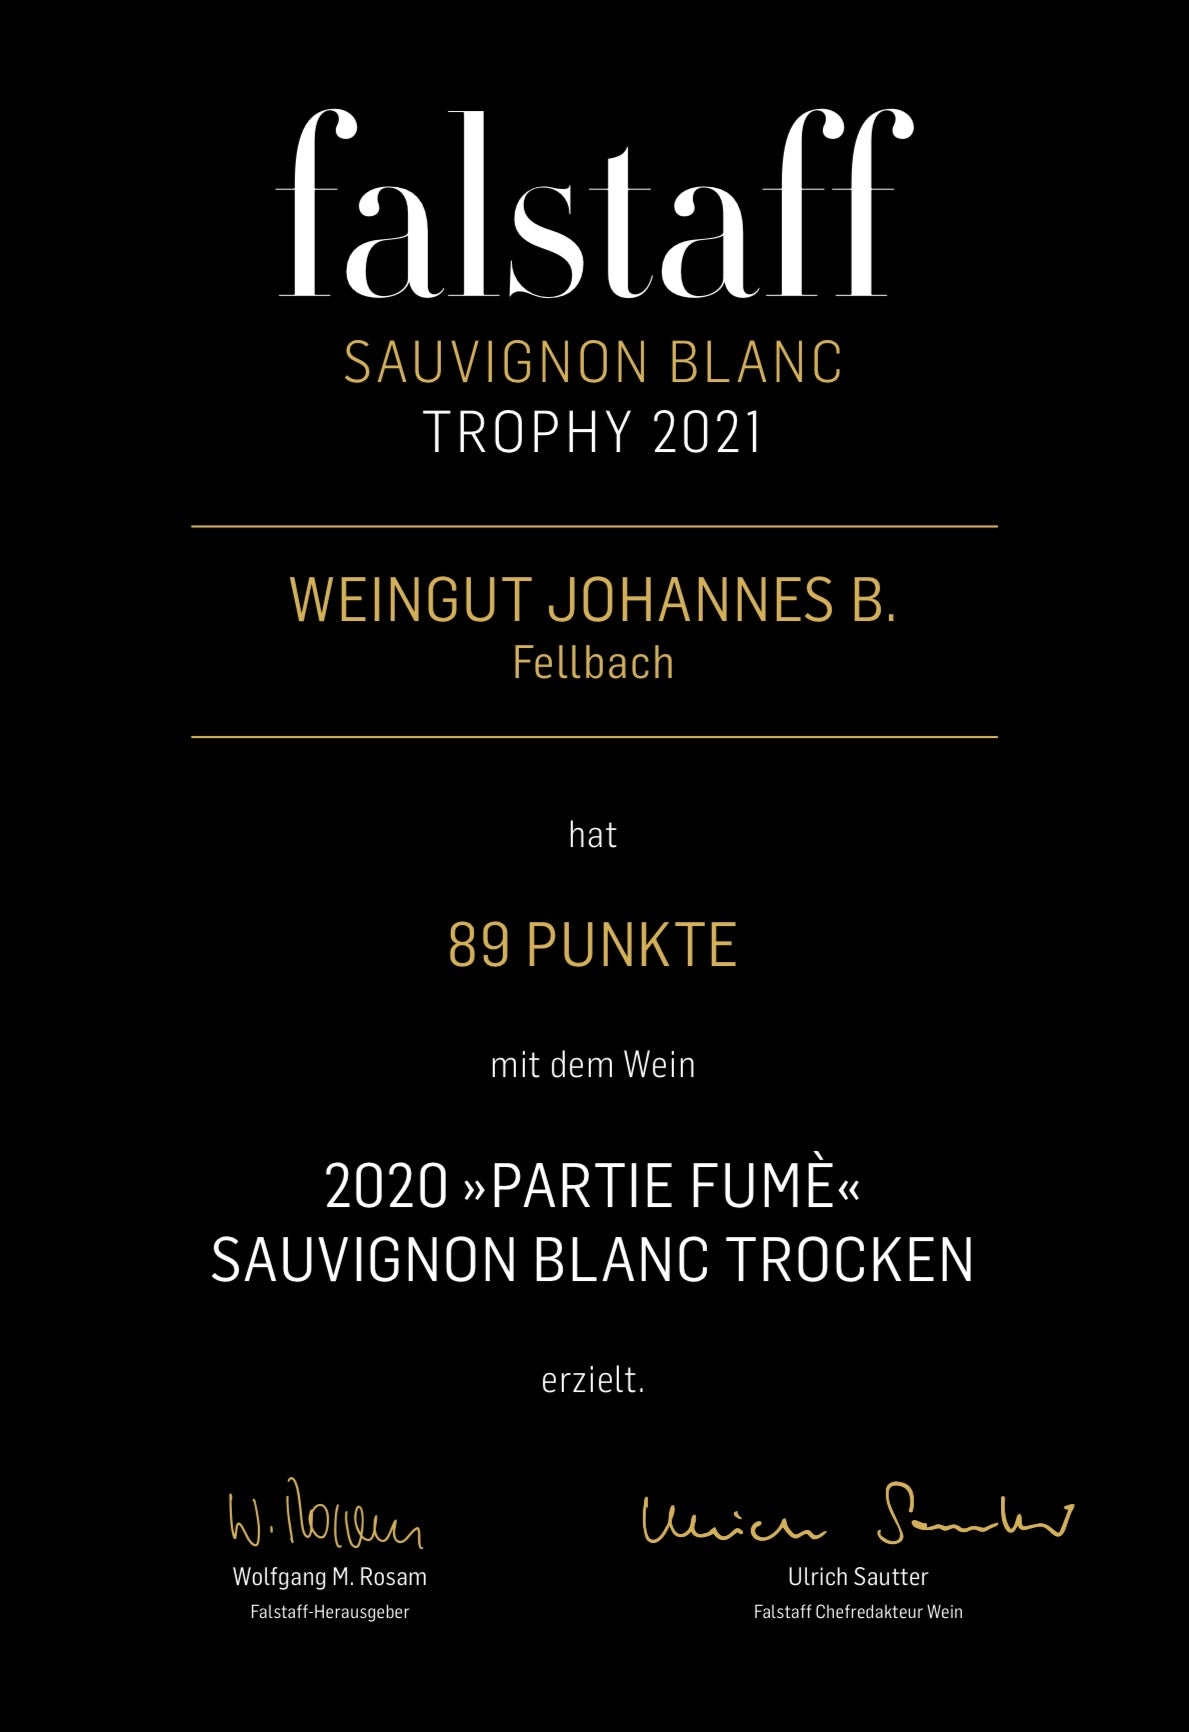 2022 Sauvignon Blanc "Partie Fumè" trocken